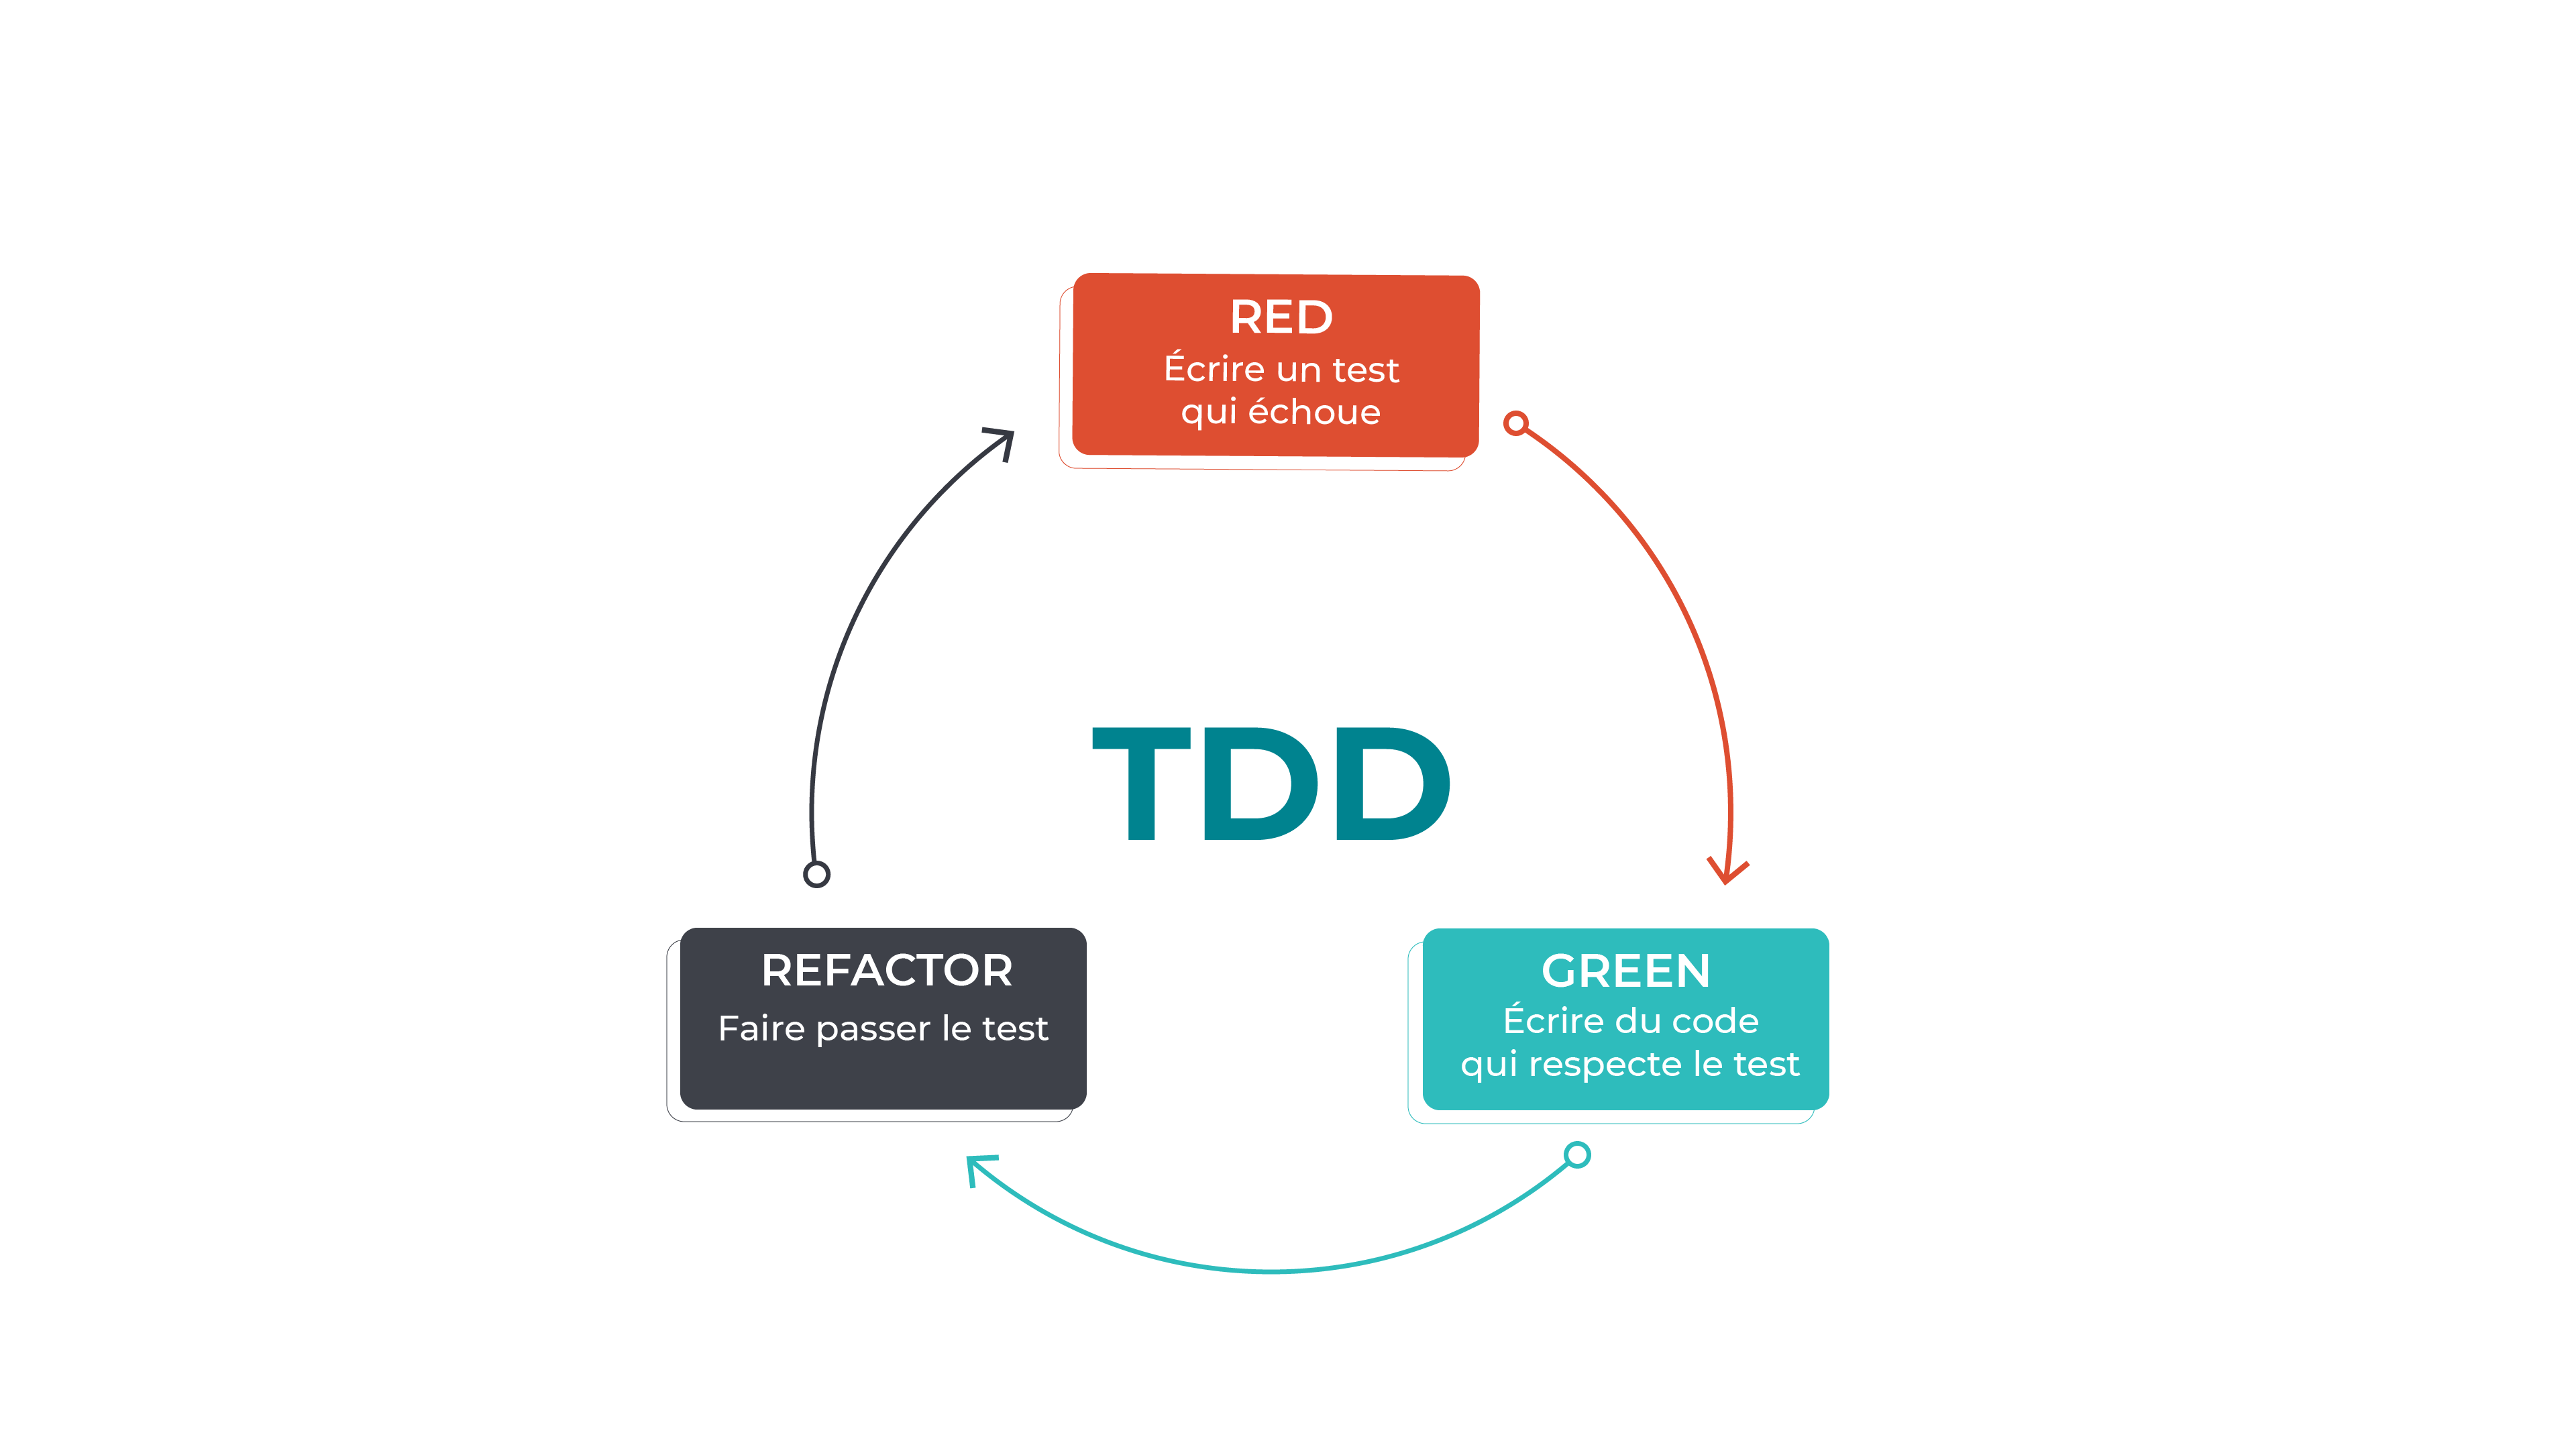 Le TDD est composé de 3 phases : RED, écrire un test qui échoue ; GREEN, écrire du code qui respecte le test ; REFACTOR, faire passer le test.